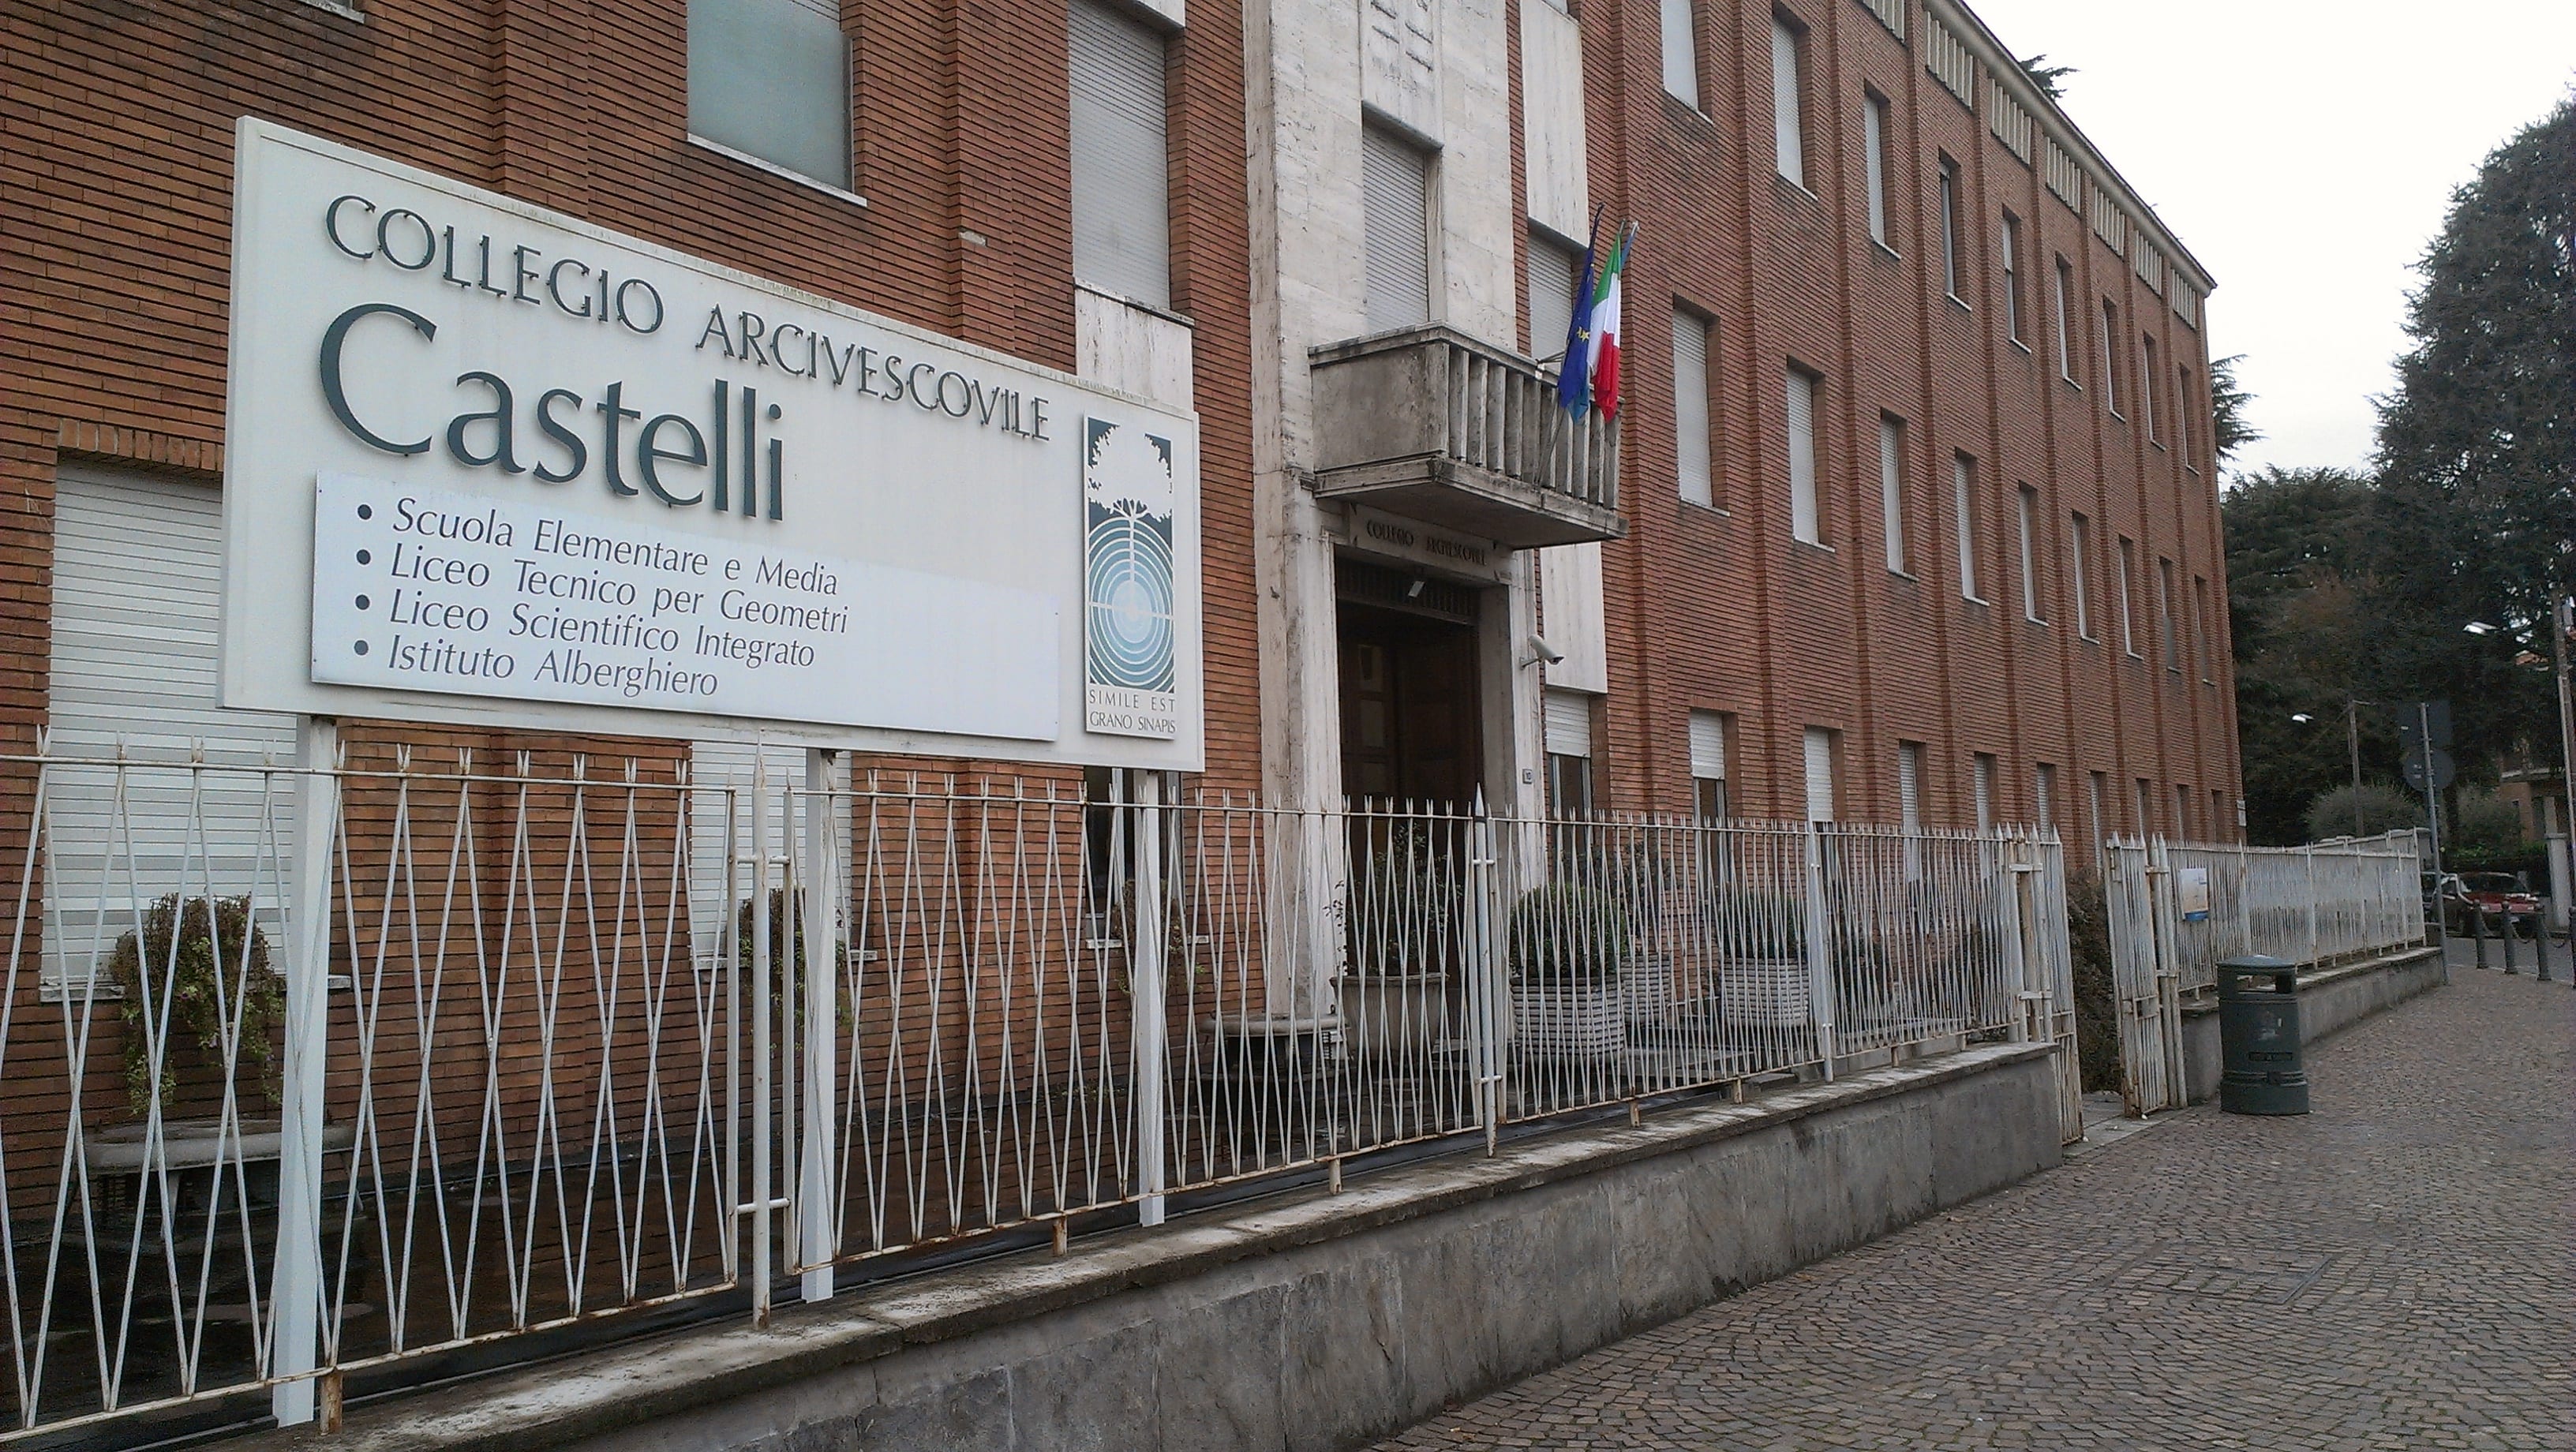 Saronno, 12enne caduto da 4 metri al collegio Castelli: si ascoltano i testimoni in attesa di sviluppi sulla prognosi